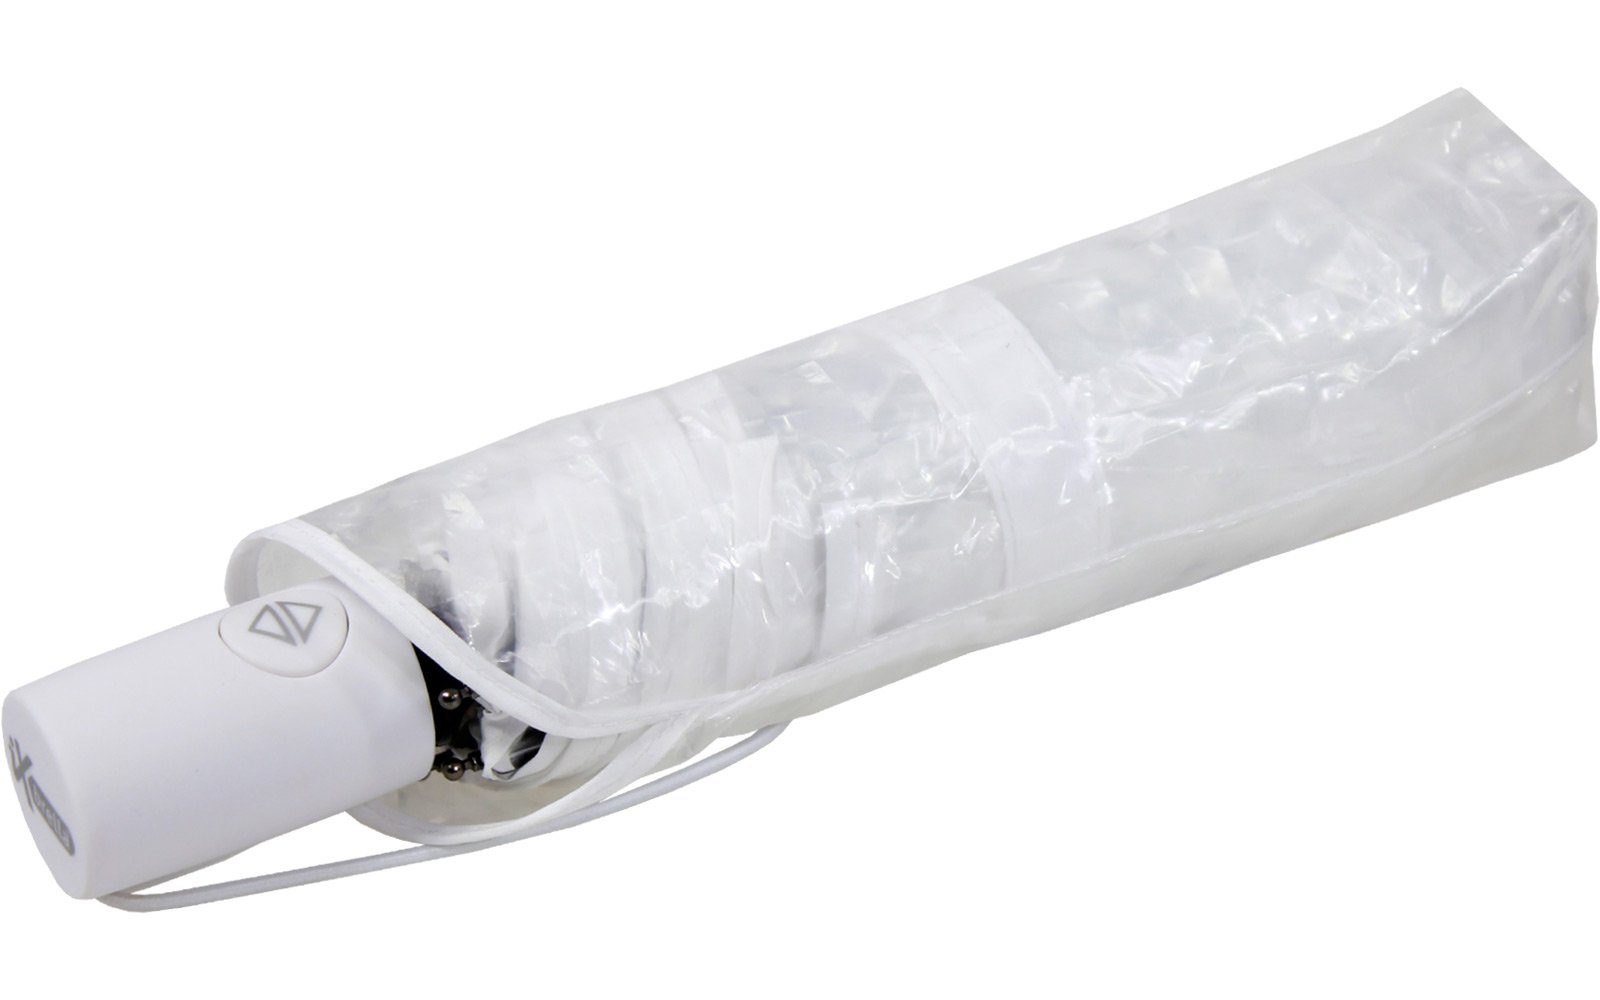 Taschenregenschirm Minischirm iX-brella mit schwarz weiß, Lens-Effekt, Automatik in rot transparent-weiß und Transparent